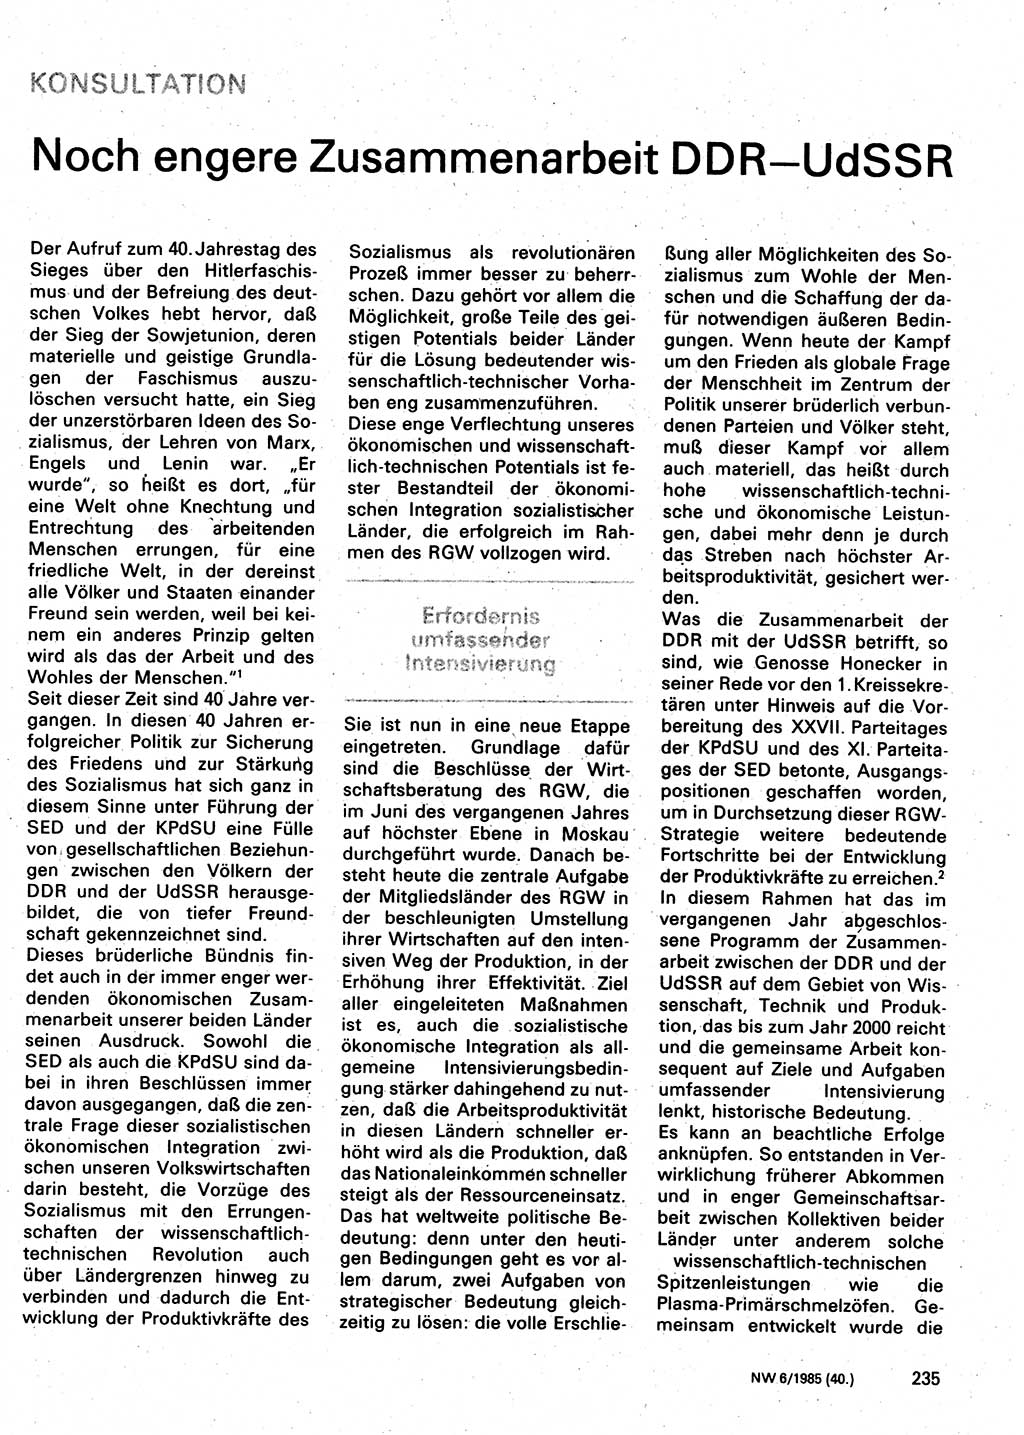 Neuer Weg (NW), Organ des Zentralkomitees (ZK) der SED (Sozialistische Einheitspartei Deutschlands) für Fragen des Parteilebens, 40. Jahrgang [Deutsche Demokratische Republik (DDR)] 1985, Seite 235 (NW ZK SED DDR 1985, S. 235)